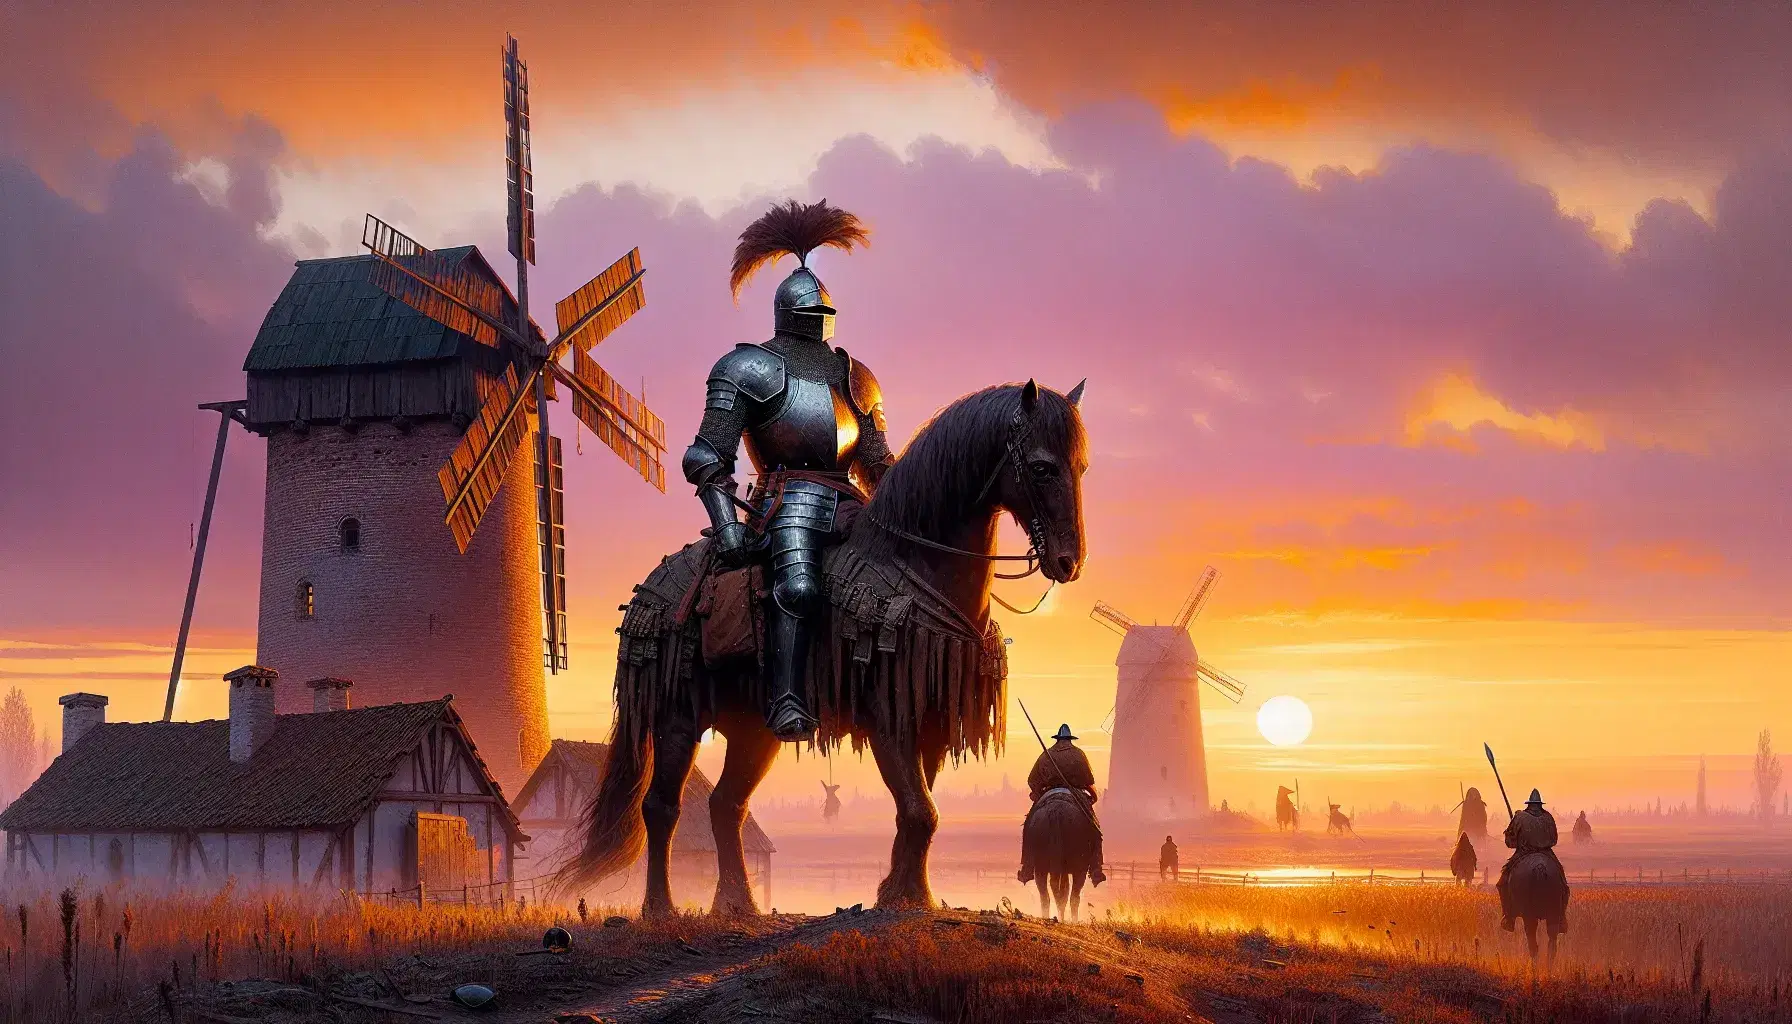 Caballero con armadura montando un caballo marrón oscuro frente a molinos de viento al atardecer, con cielo anaranjado y morado y edificio al fondo.